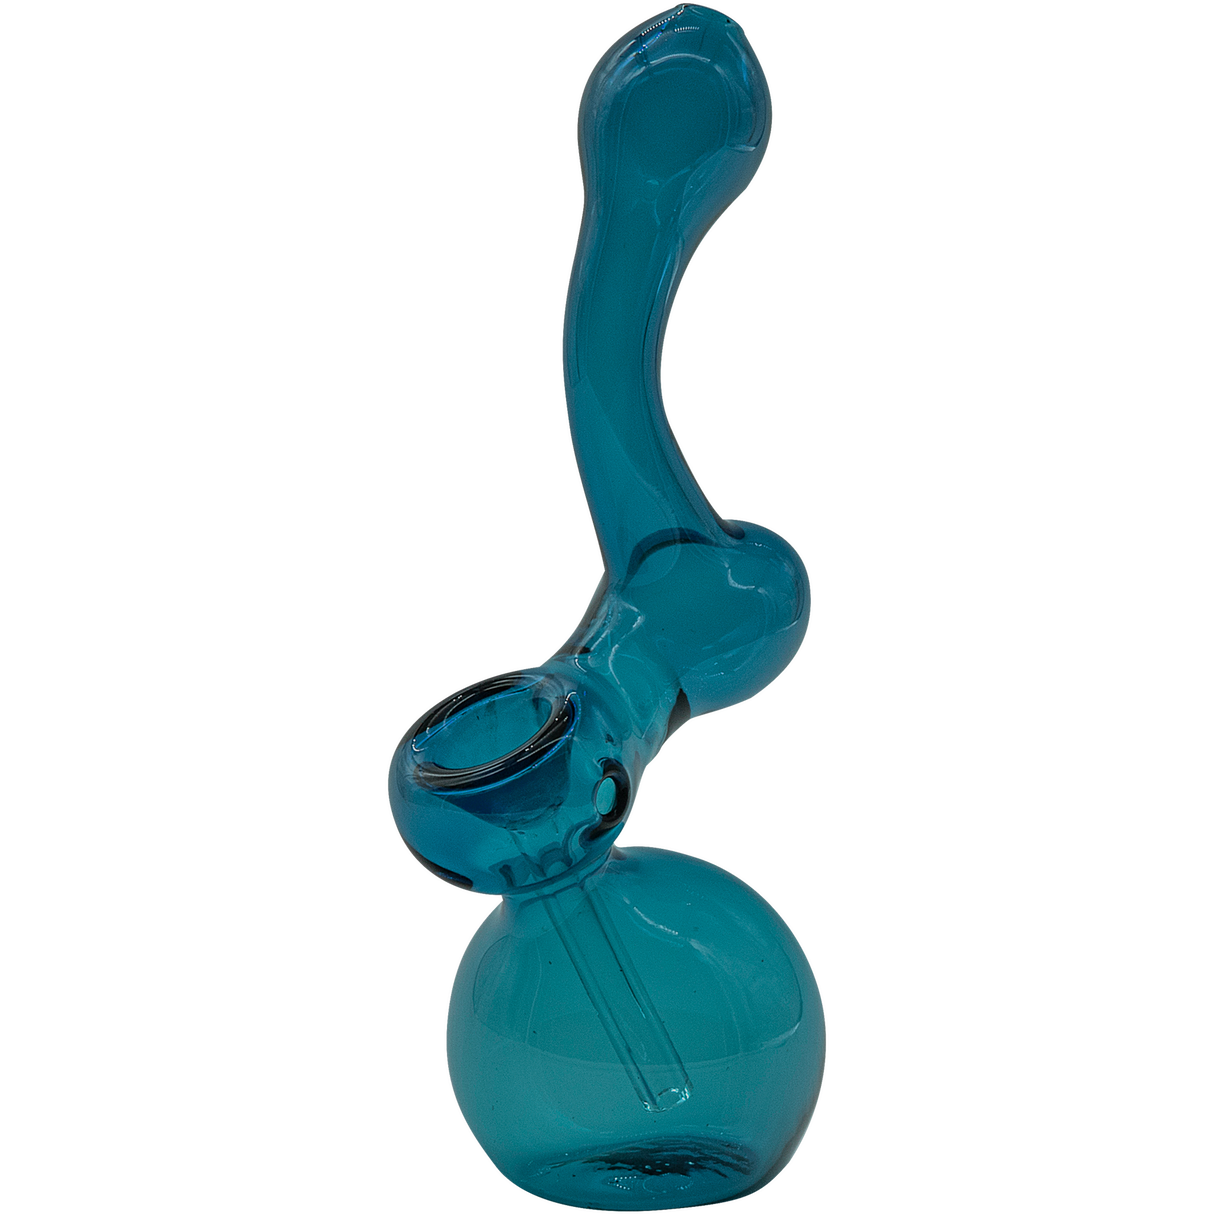 LA Pipes Sherbub Glass Sherlock Bubbler Pipe in Sea Foam, 6" Borosilicate, USA Made